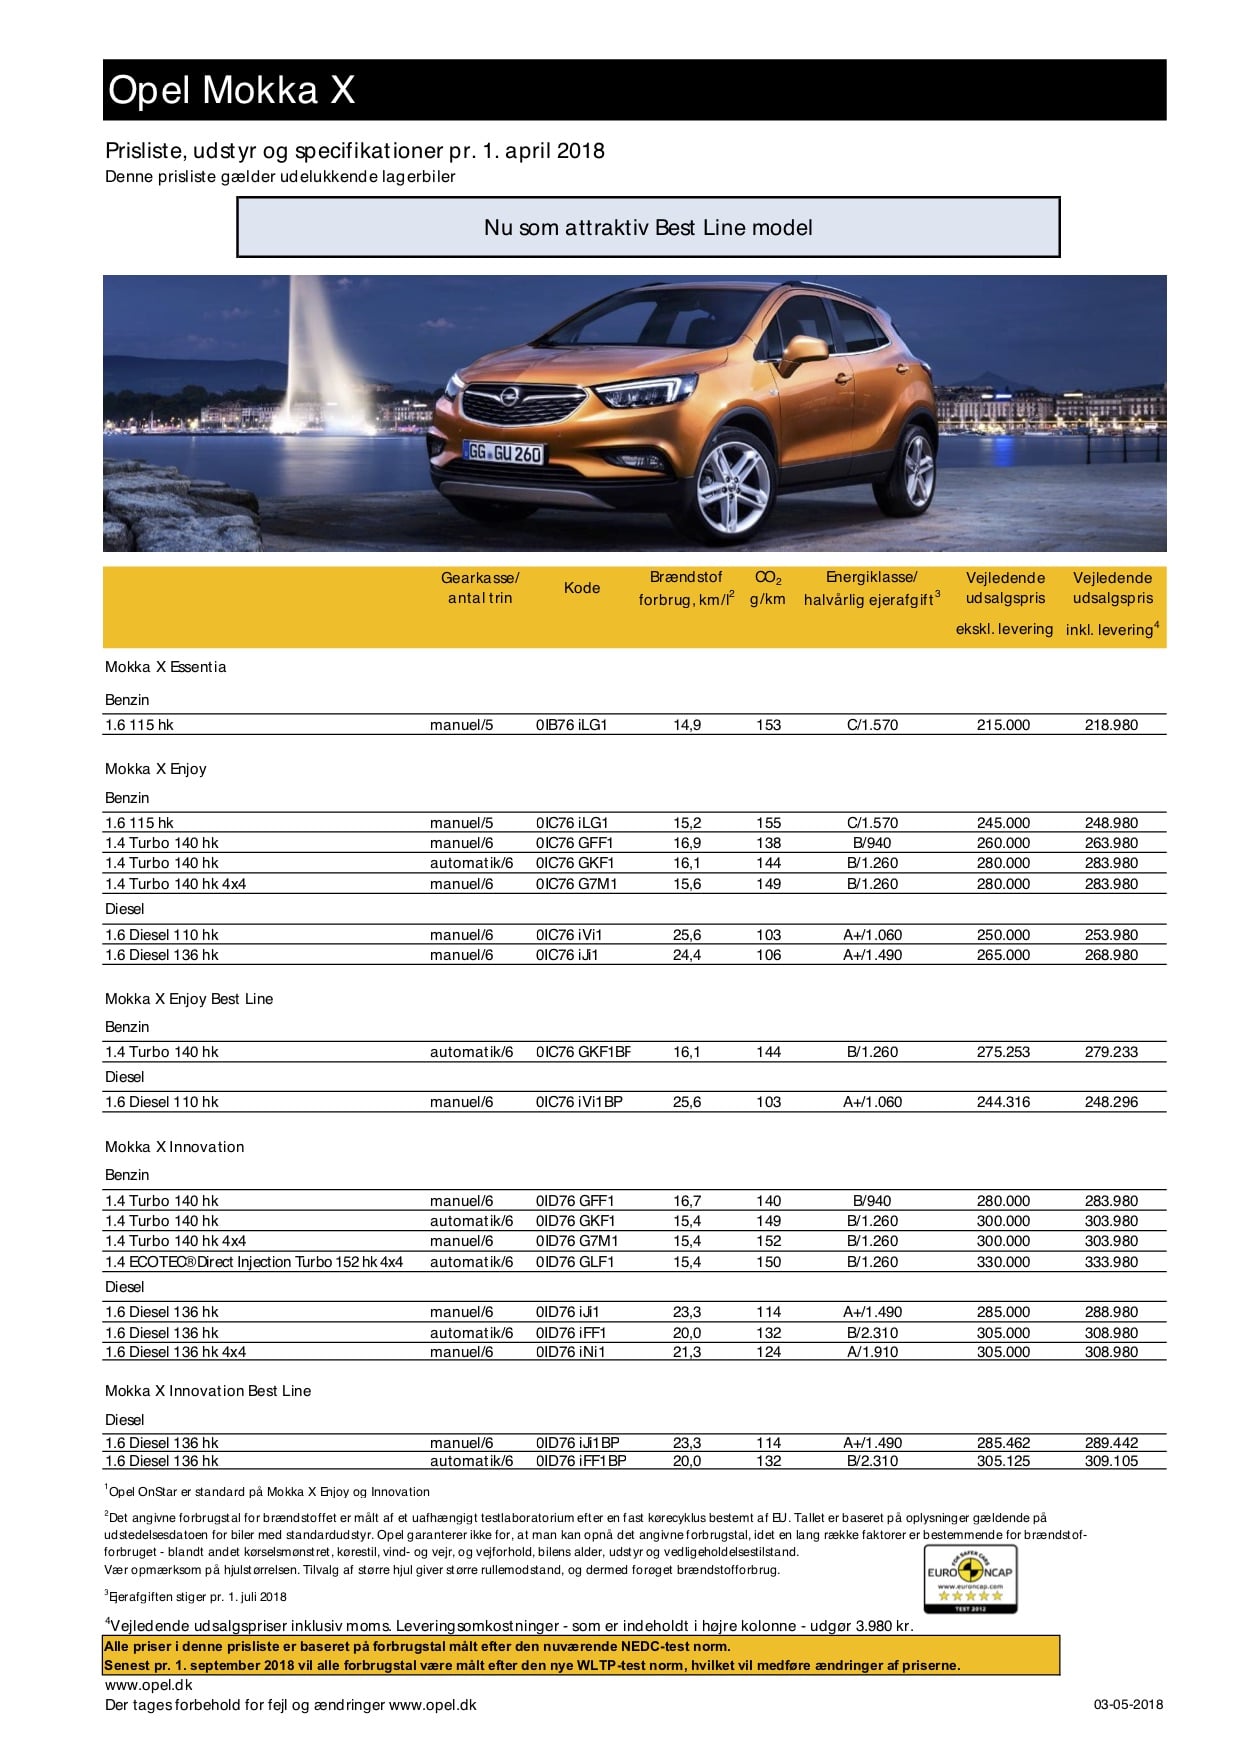 Opel Mokka X forkæler dig med fire fede features